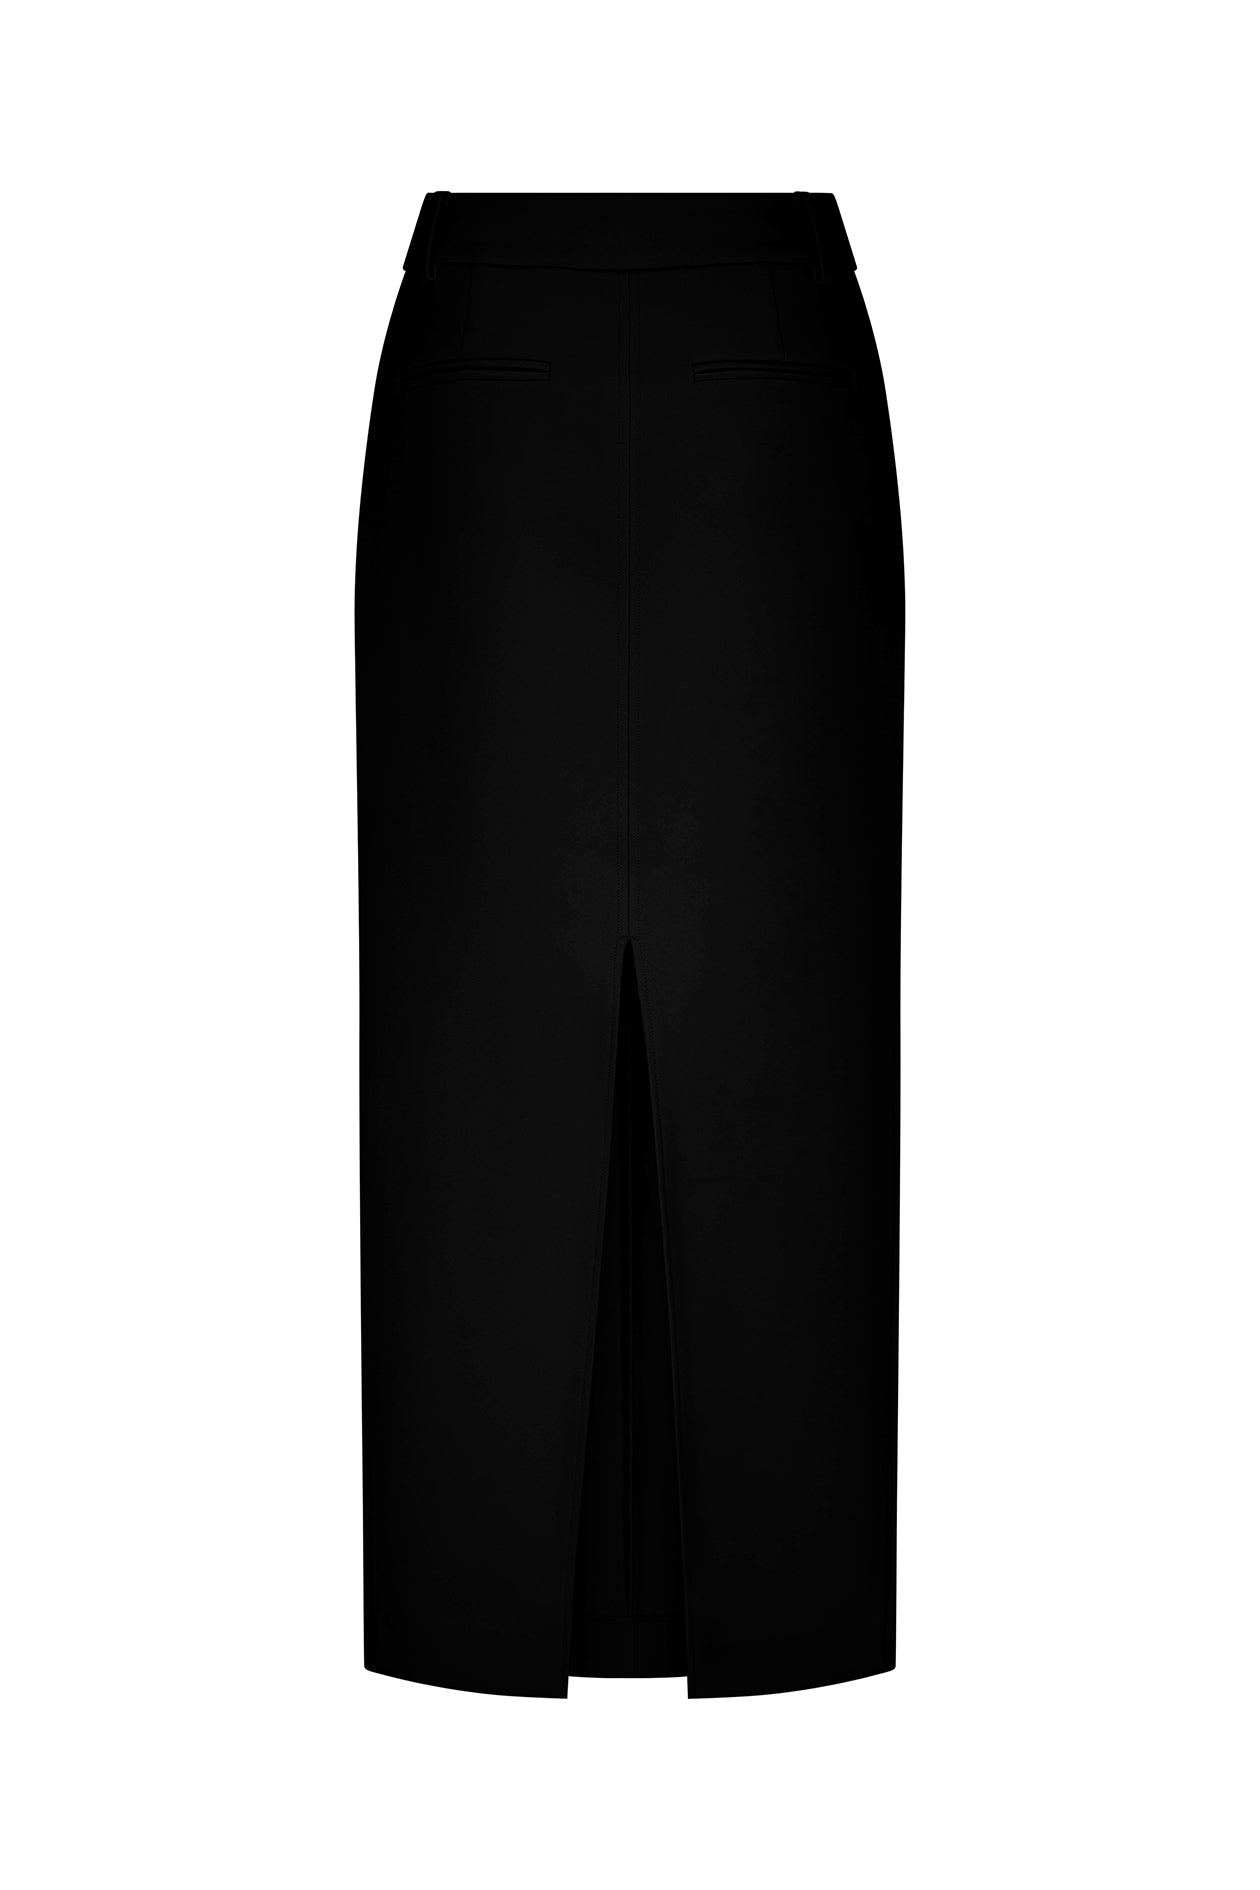 Long Jas Skirt Black